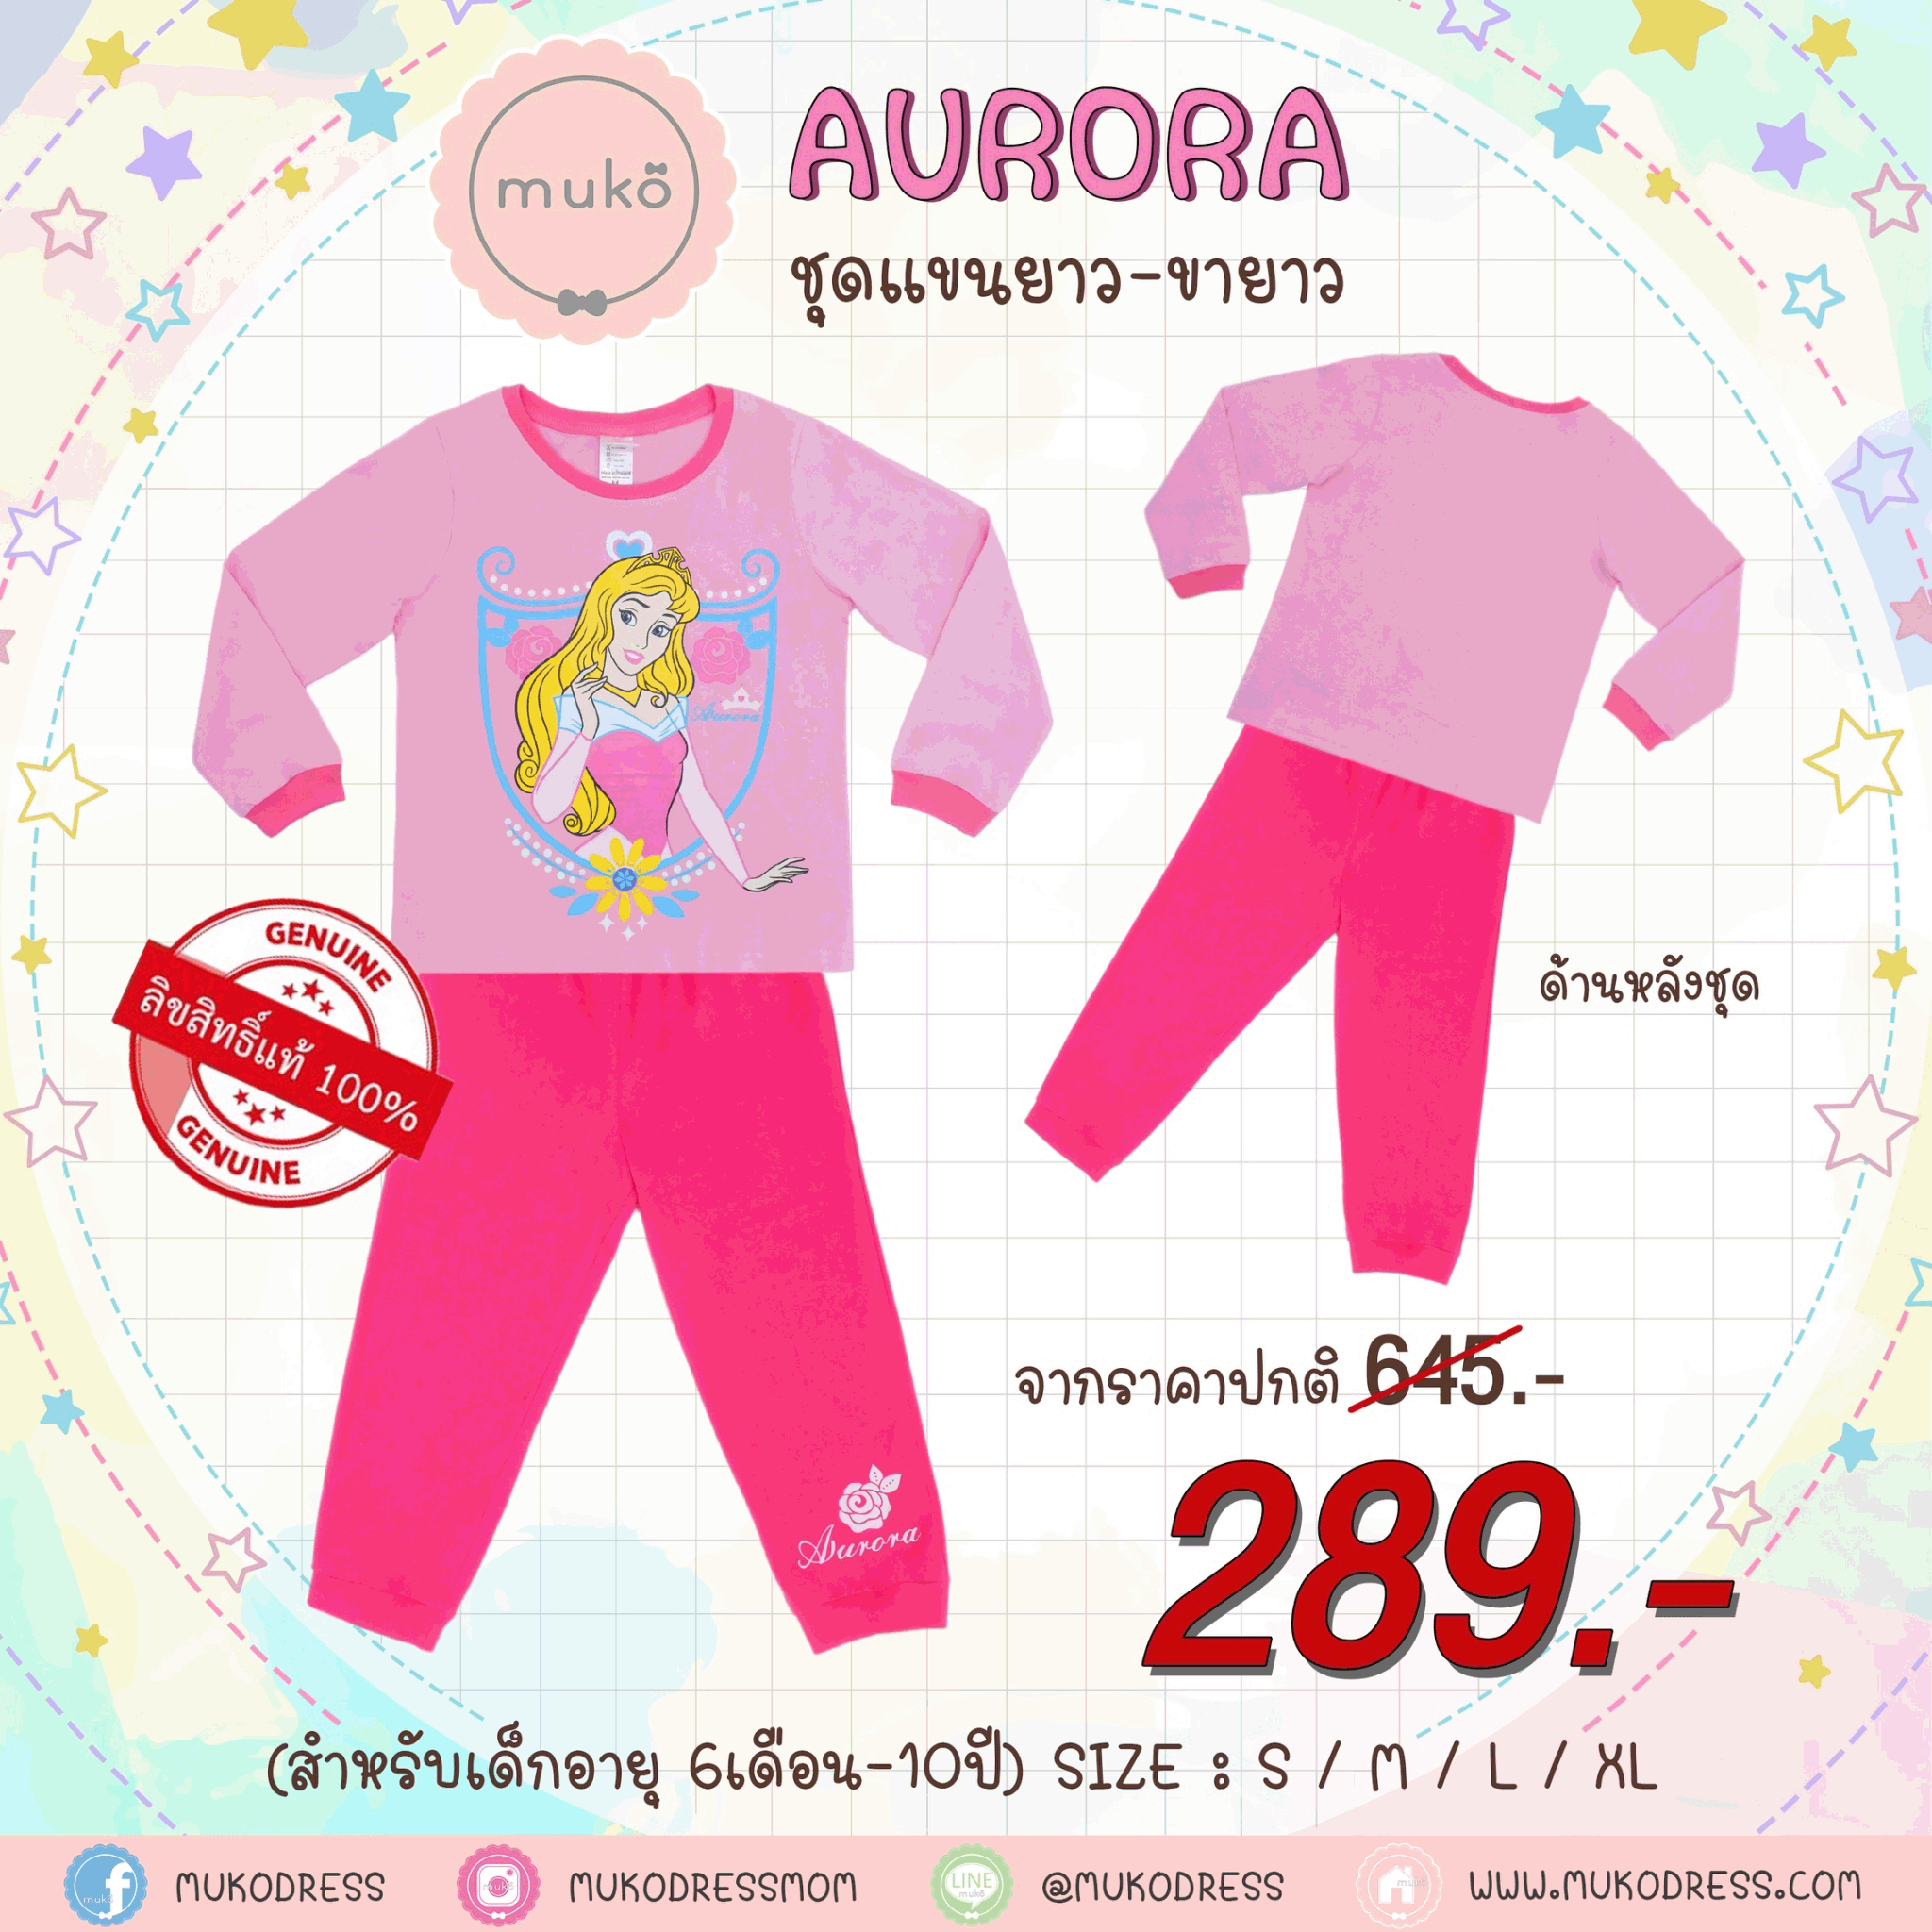 ชุดเด็ก 7-10 ขวบ แขนยาว-ขายาว (Size XL) DPC127-12-XL-Light Pink XL ลาย เจ้าหญิงออโรร่า Aurora สีชมพูอ่อน (ชมพูอ่อน)